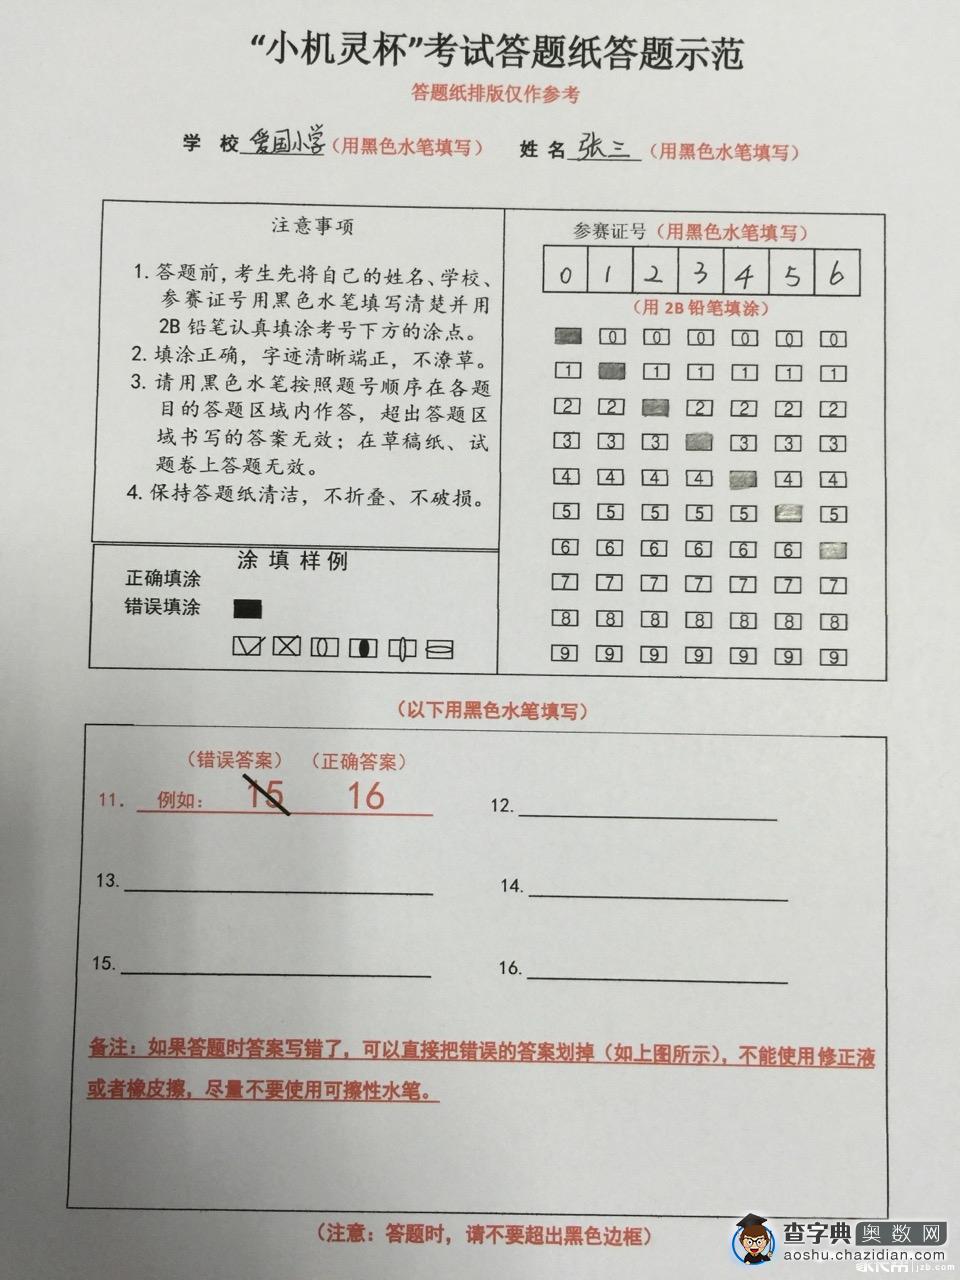 上海第14届小机灵杯考前须知及答题卡样式1